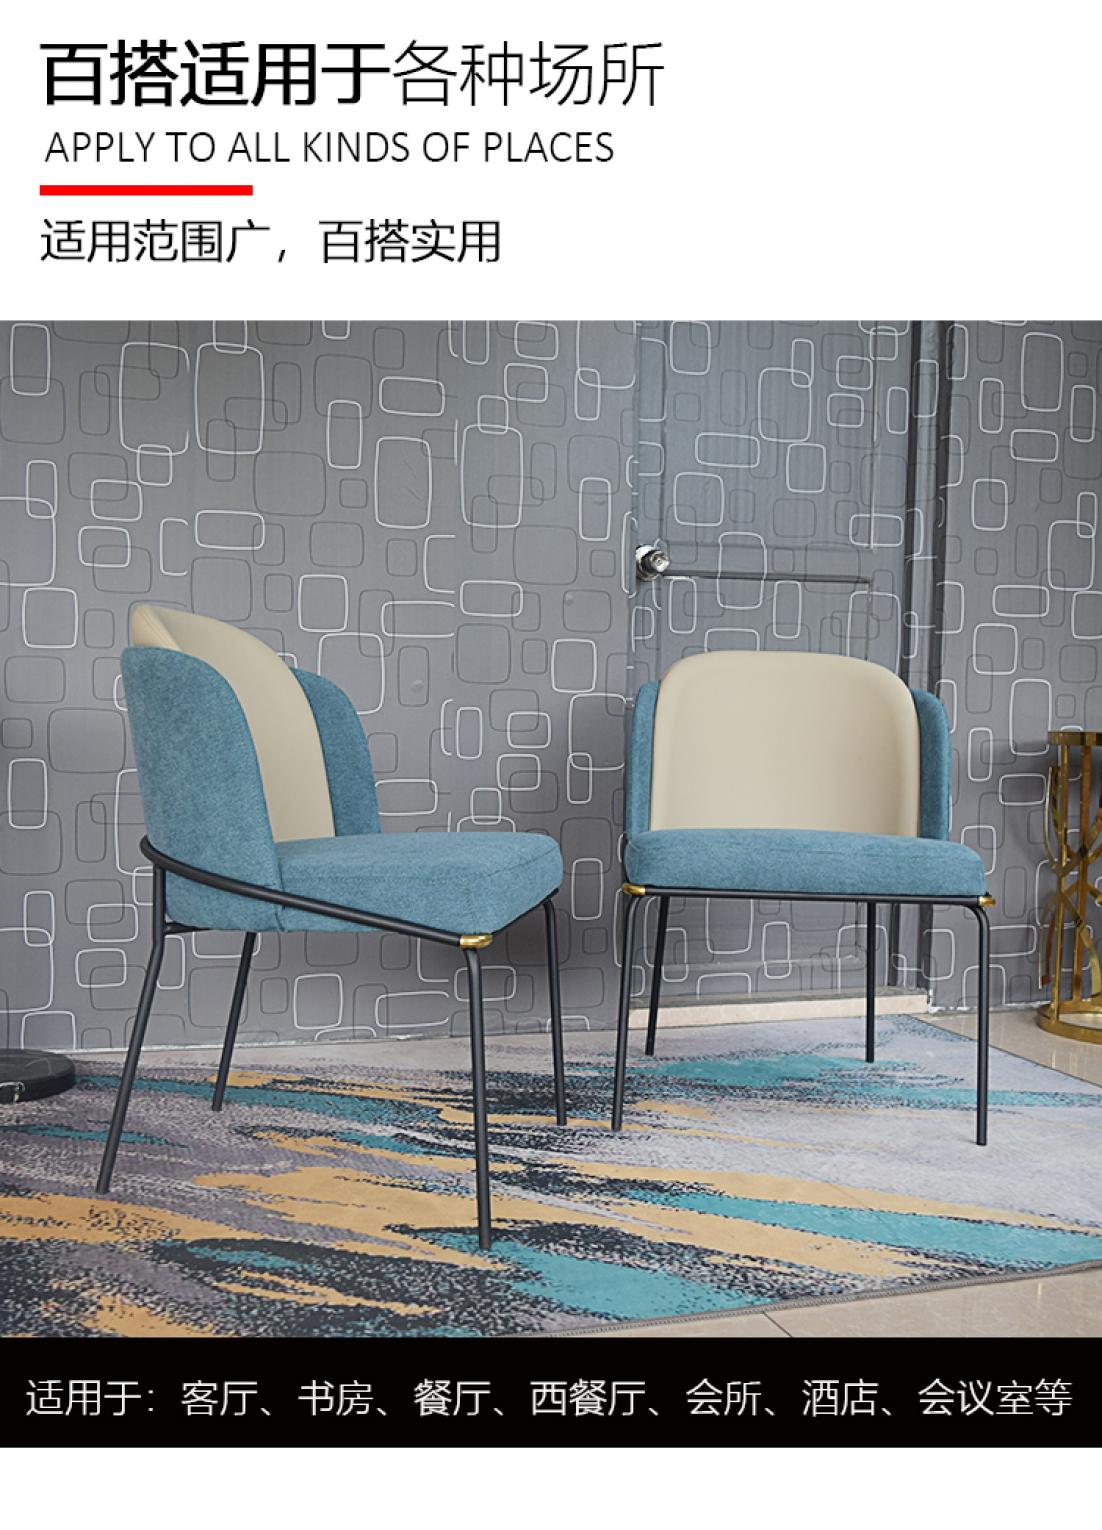 蓝色餐椅-详情页_03.jpg